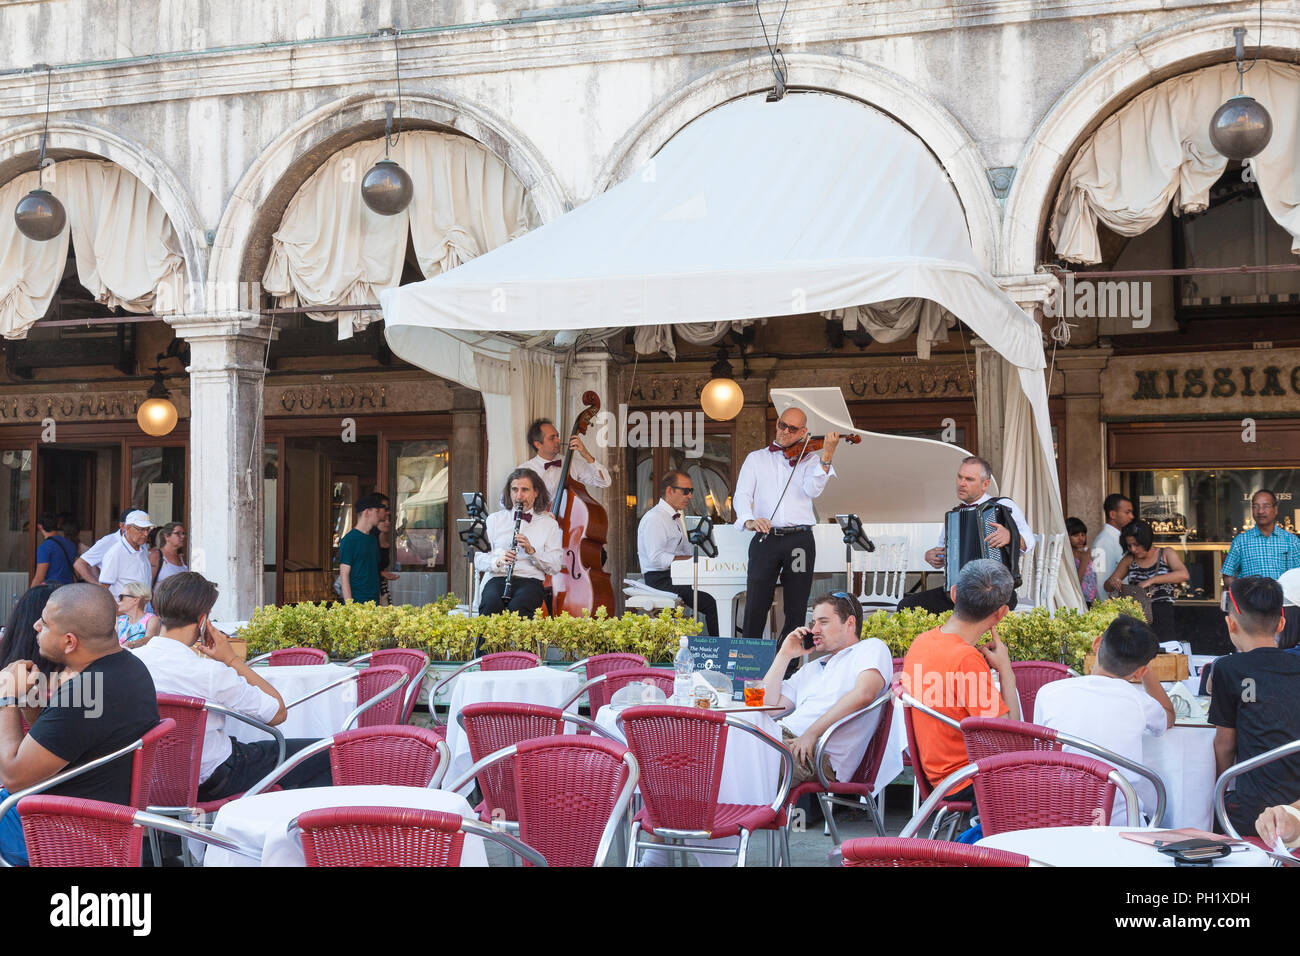 Spectacle de musique au Caffe Ristorante Quadri, Piazza San Marco, Venice, Veneto, Italie avec les touristes assis aux tables en plein air enkoying l'ombre Banque D'Images